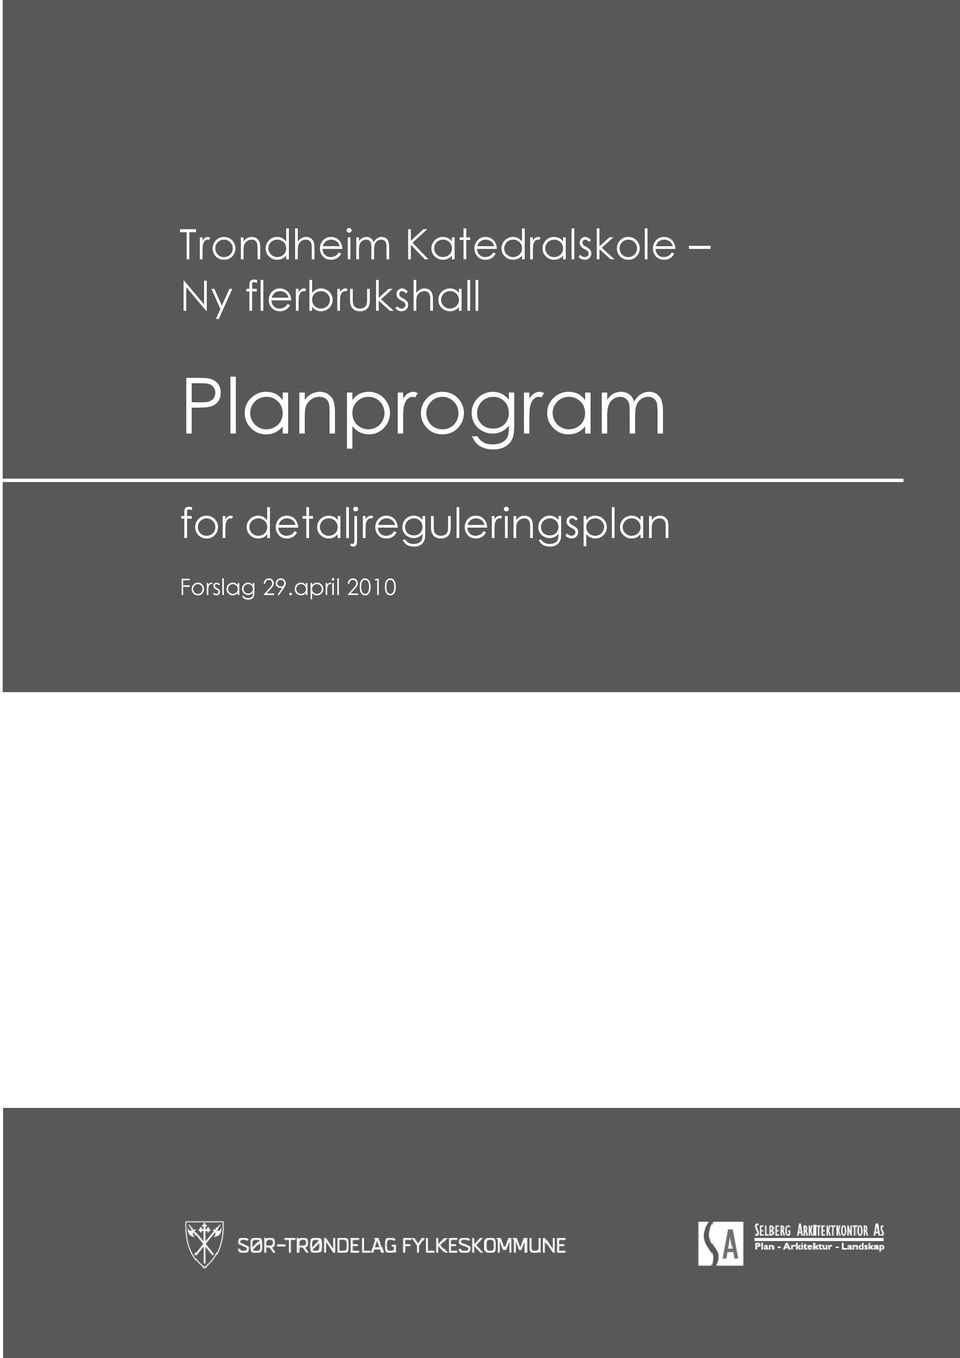 Planprogram for